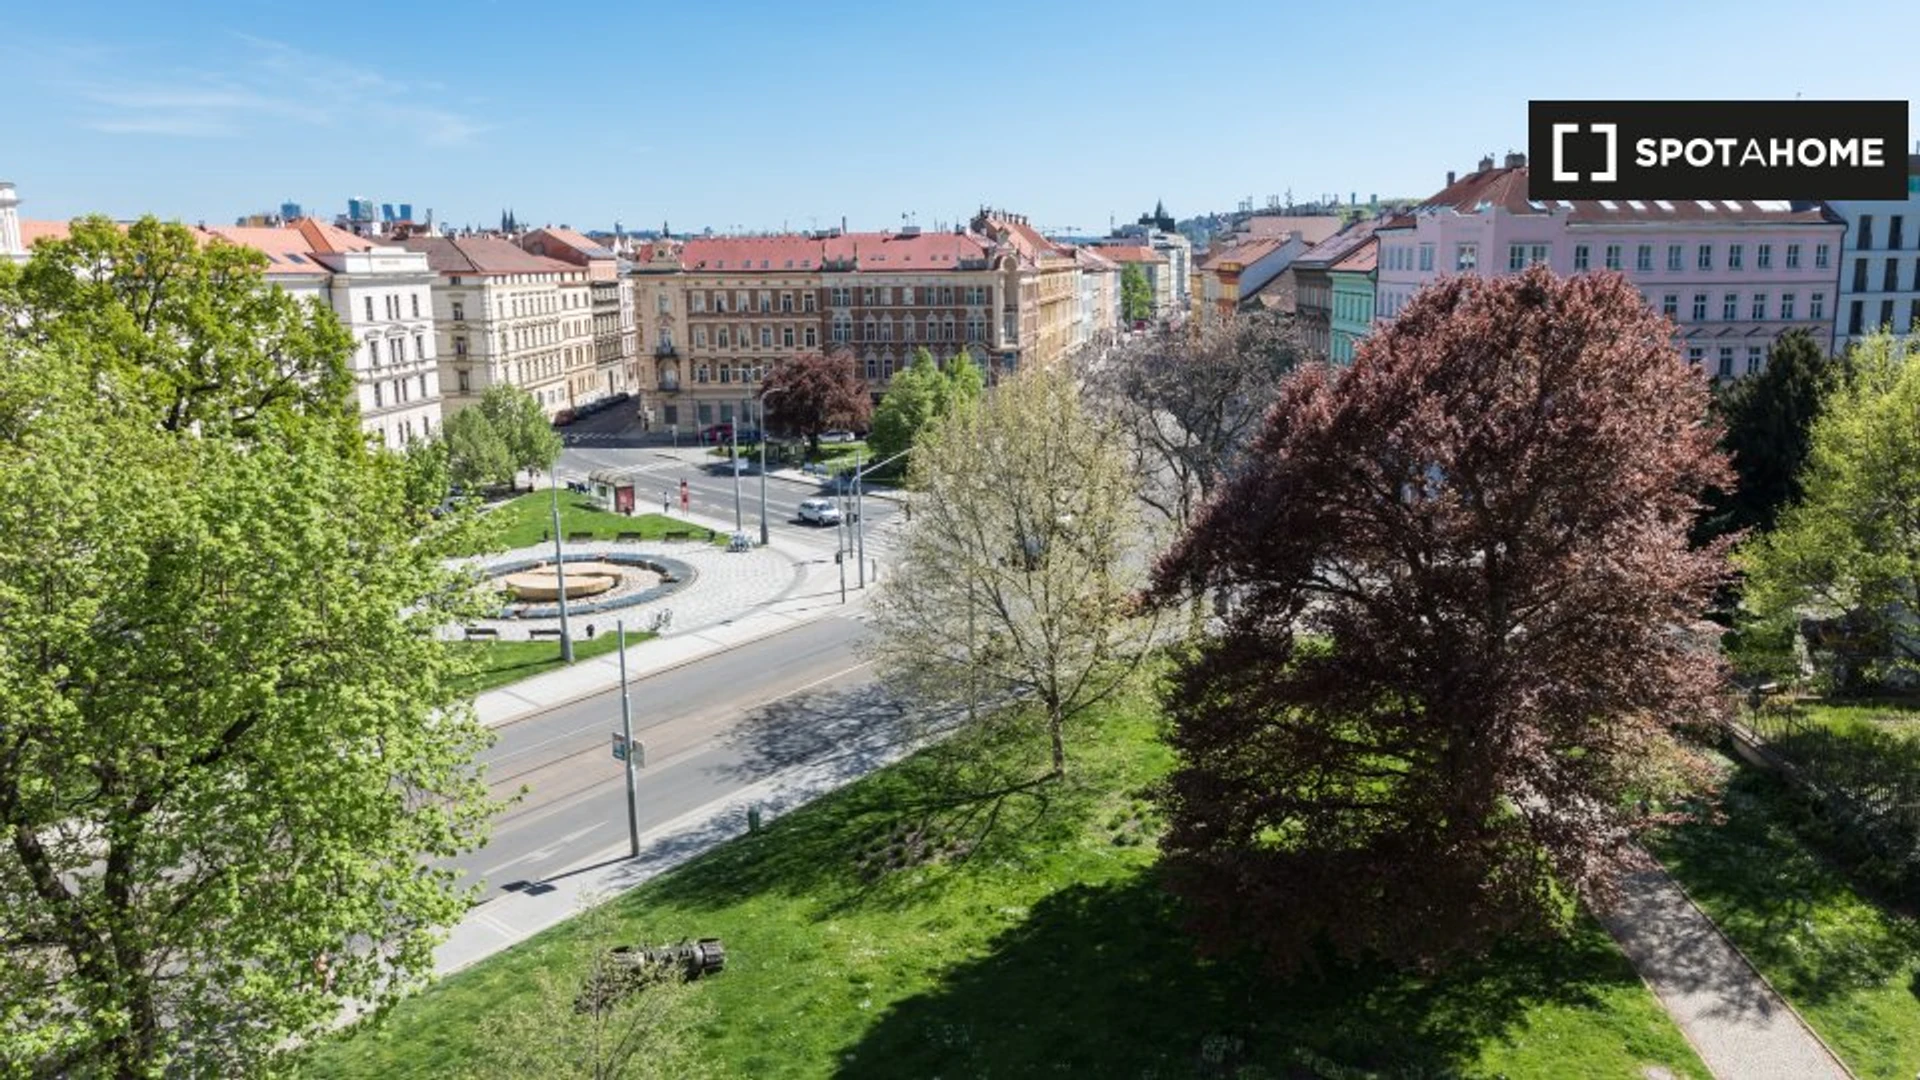 Stanze affittabili mensilmente a Praga